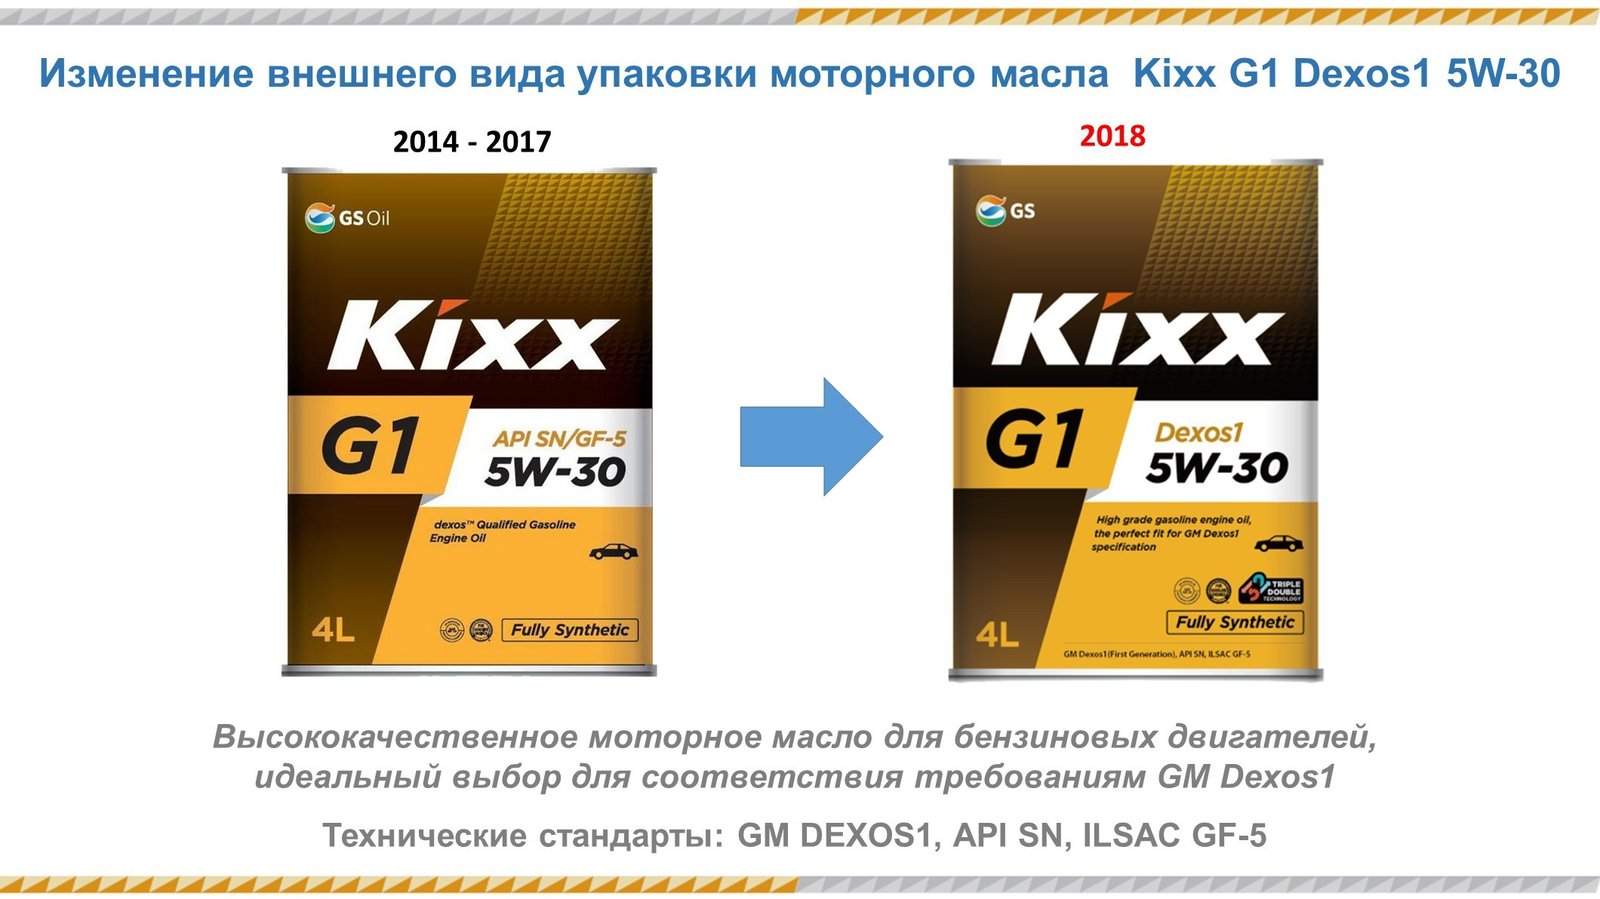 Kixx G1 Dexos1_new.jpg